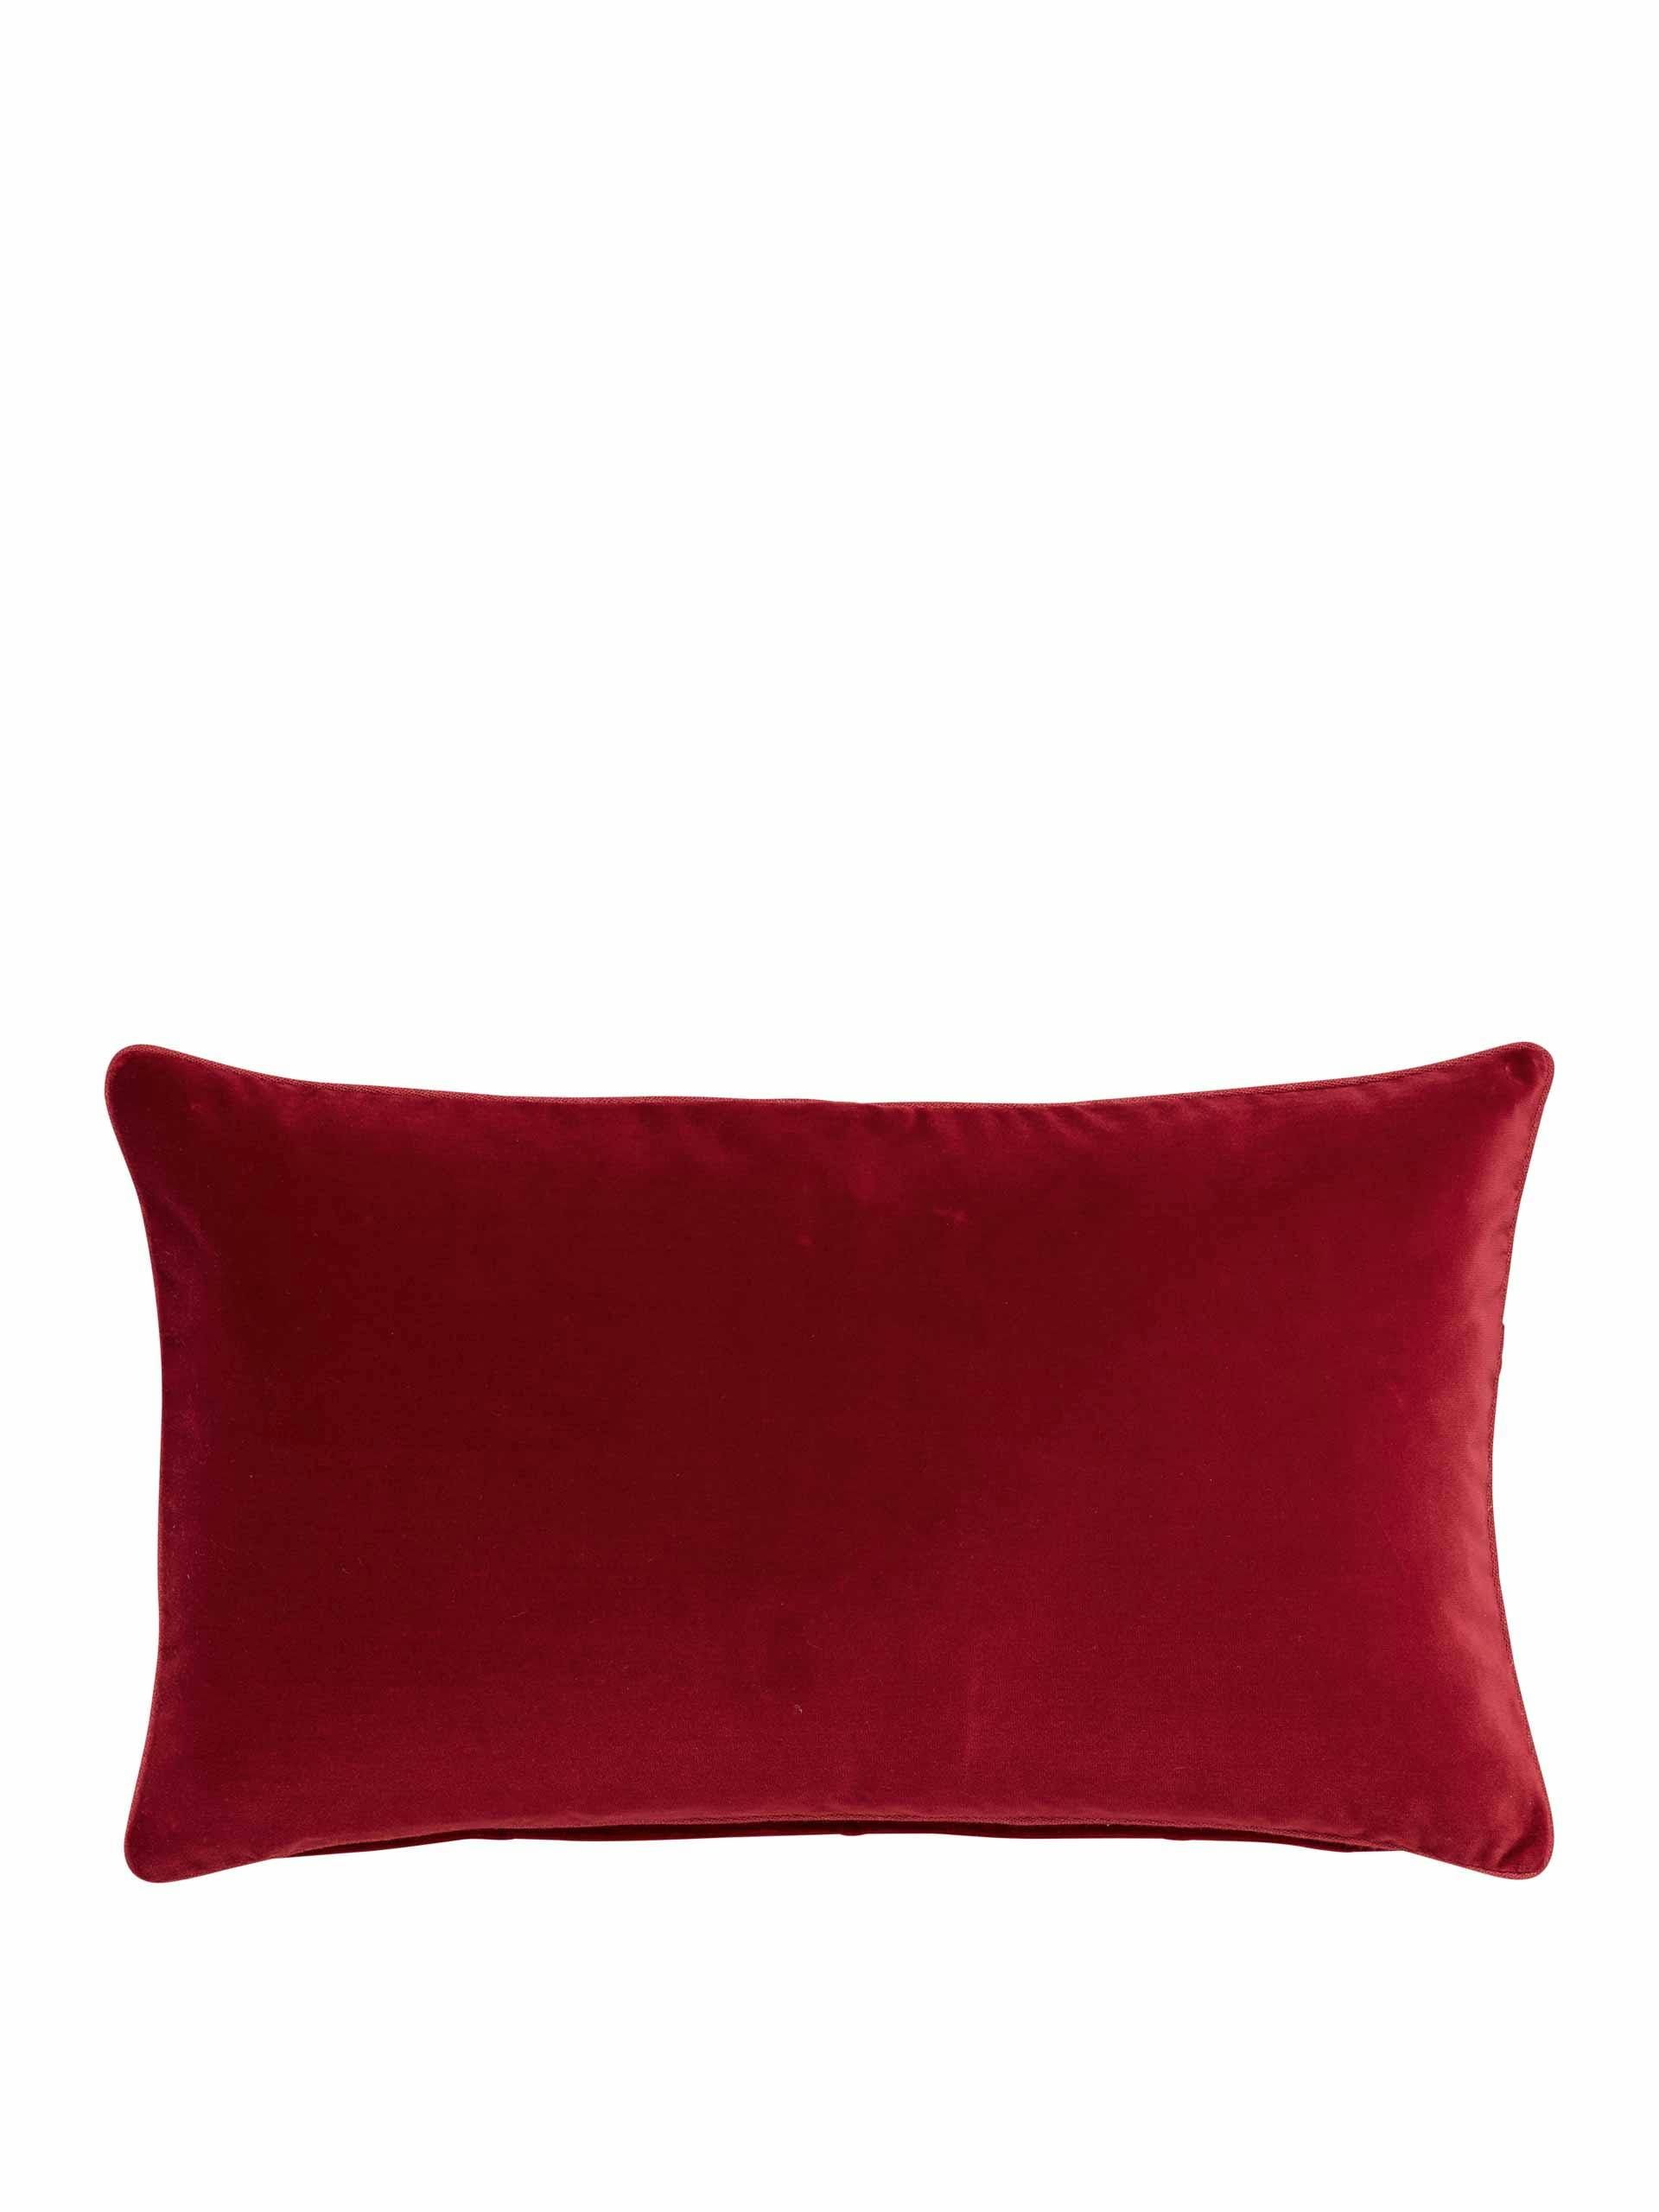 Red velvet cushion